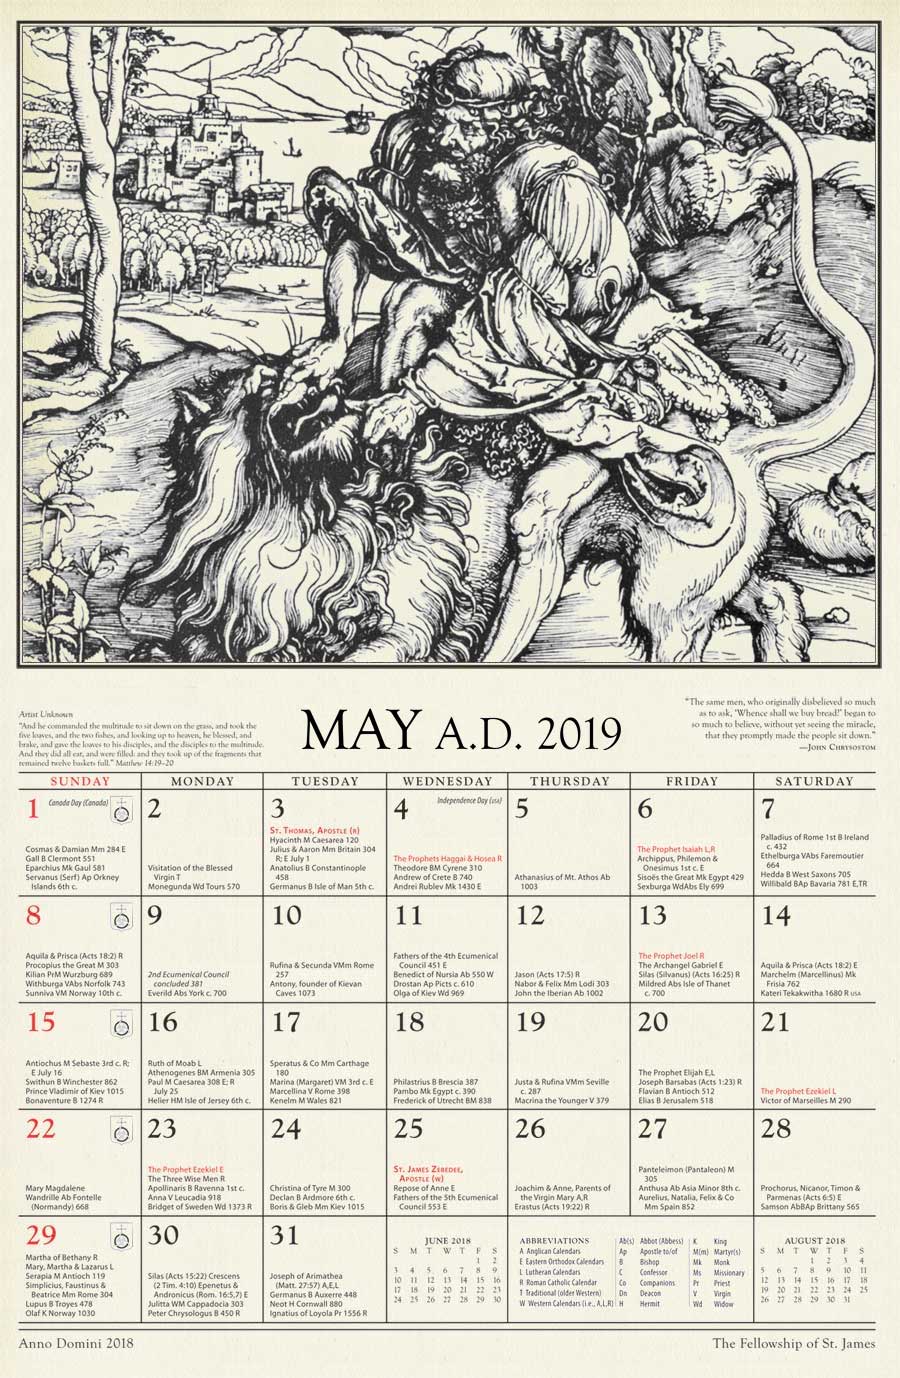 Anno Domini The 2019 St. James Calendar